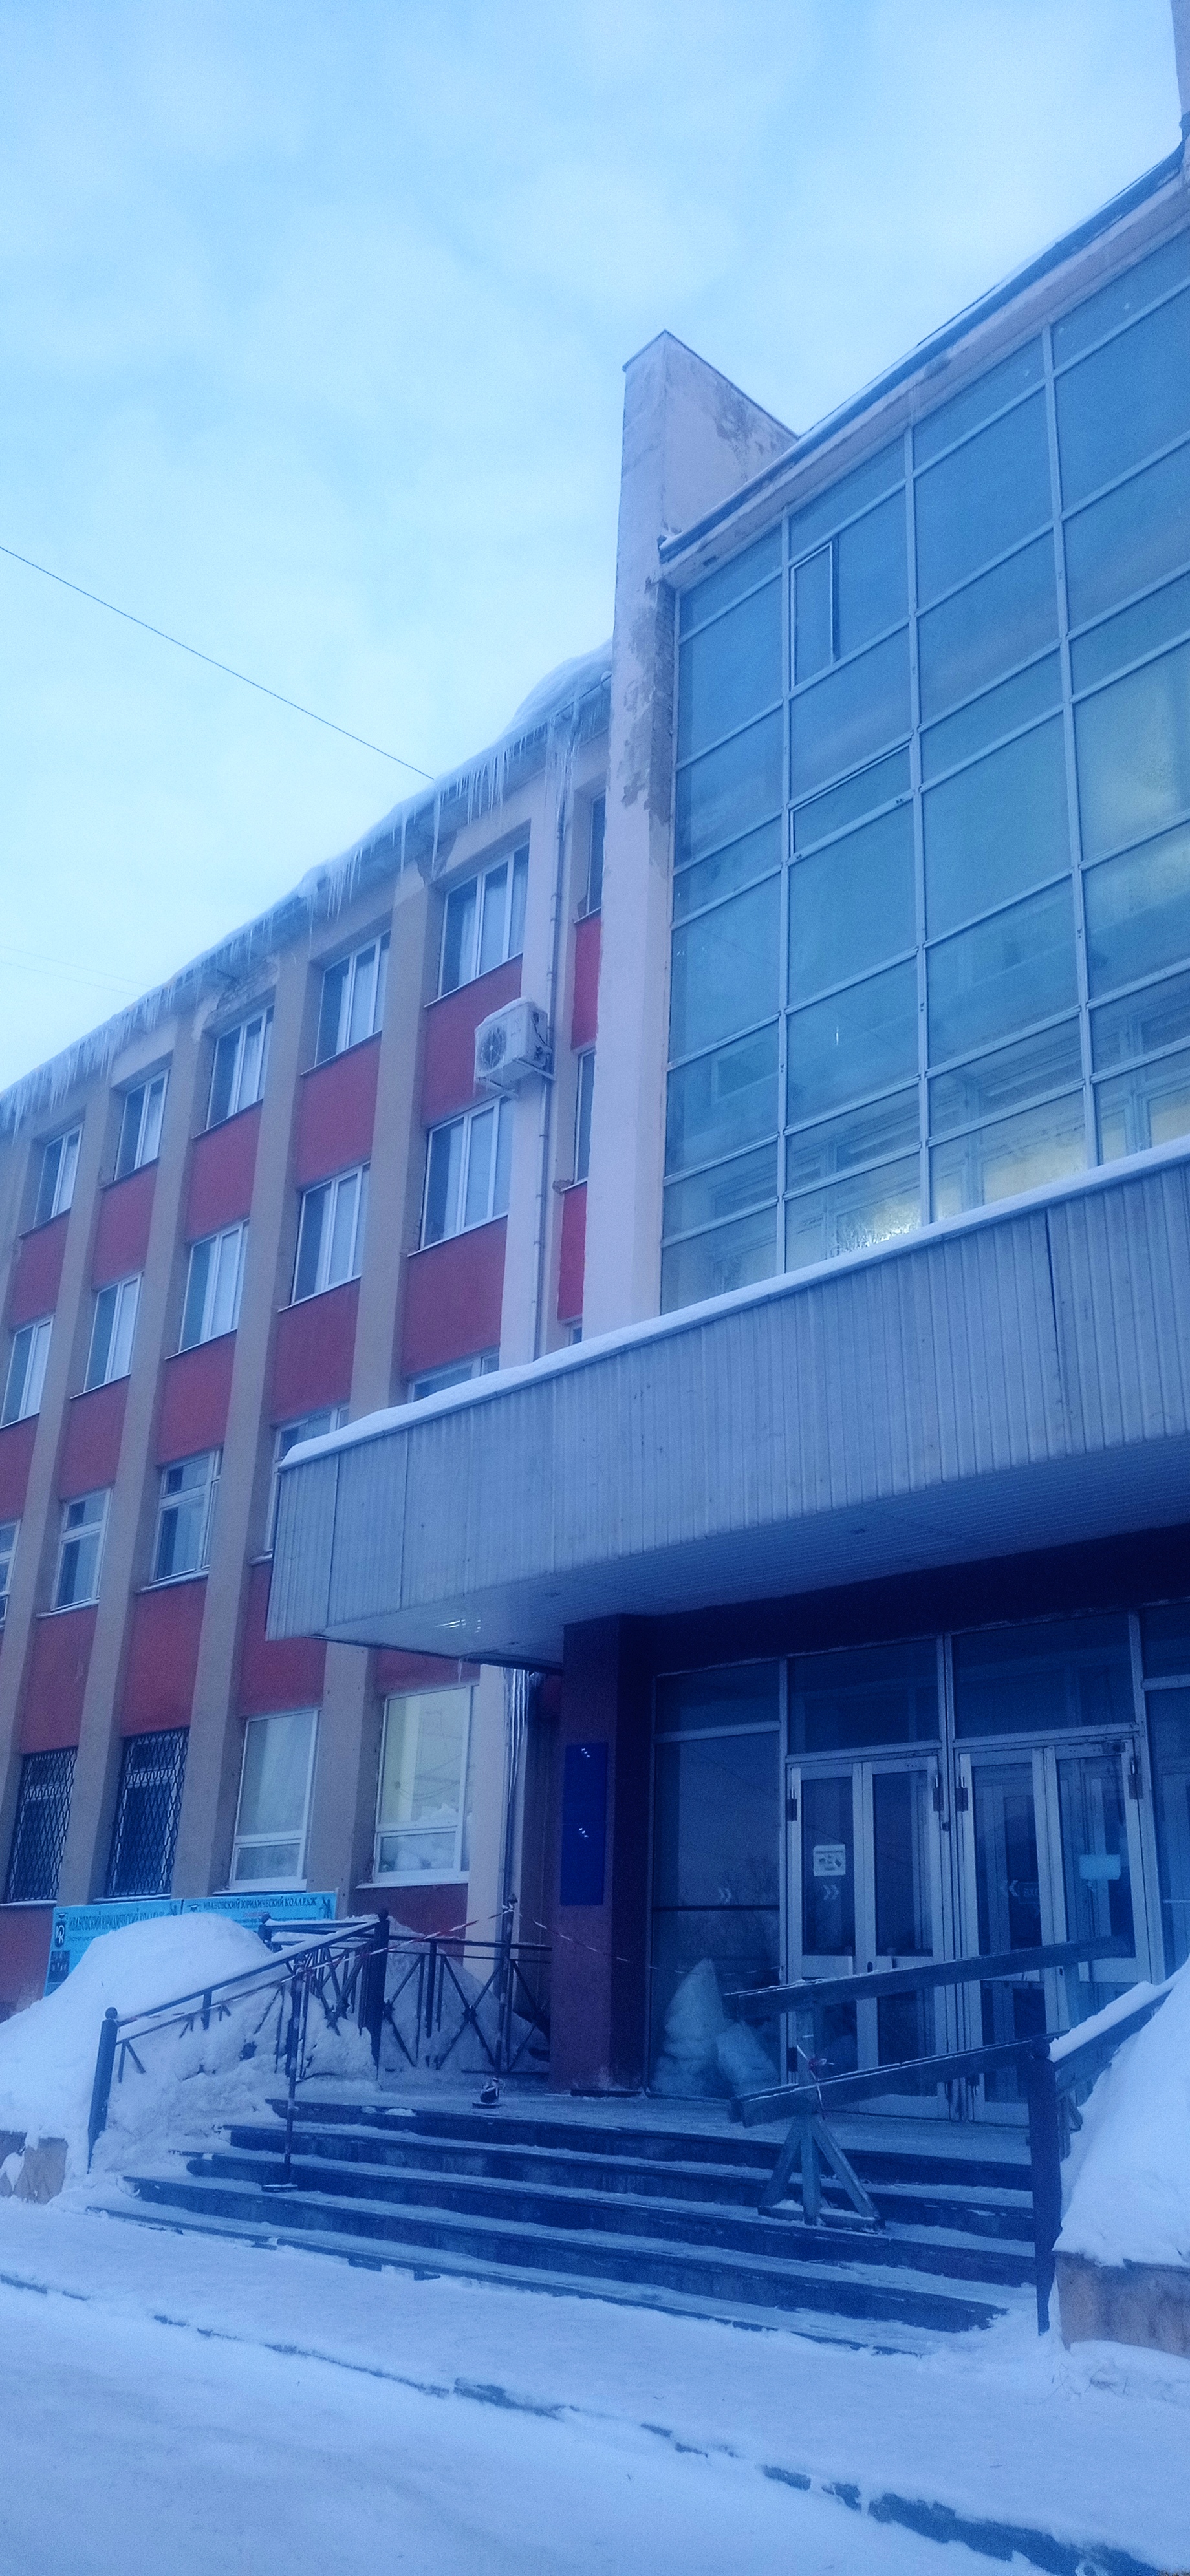 Юридический колледж, Иваново.